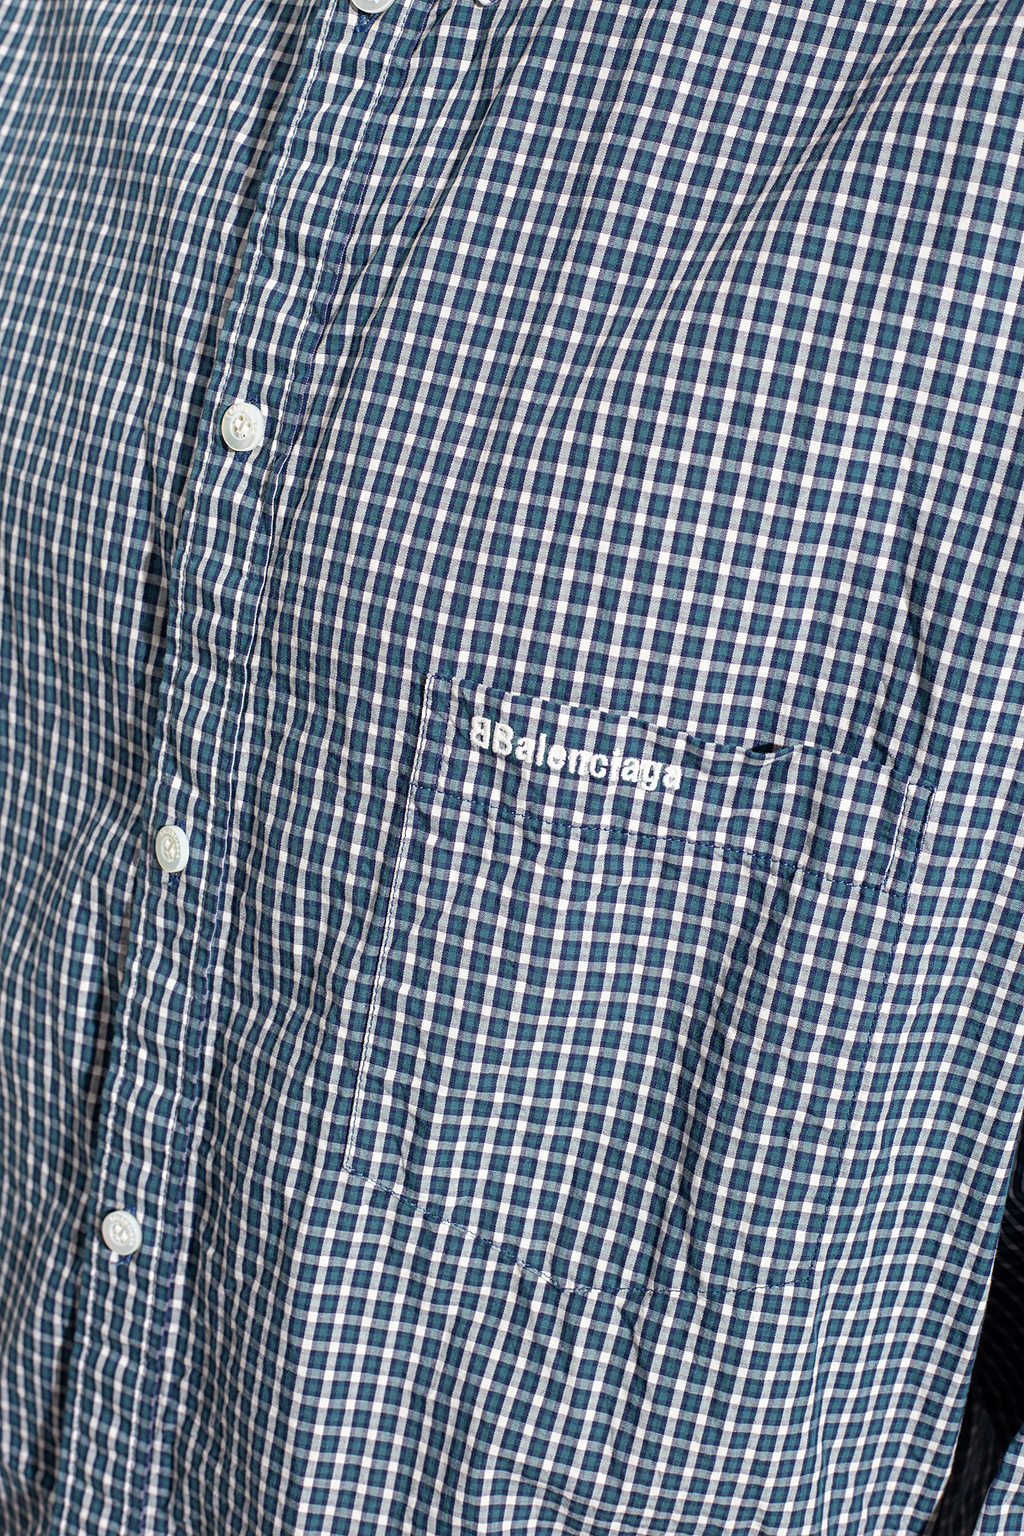 Balenciaga Checked shirt